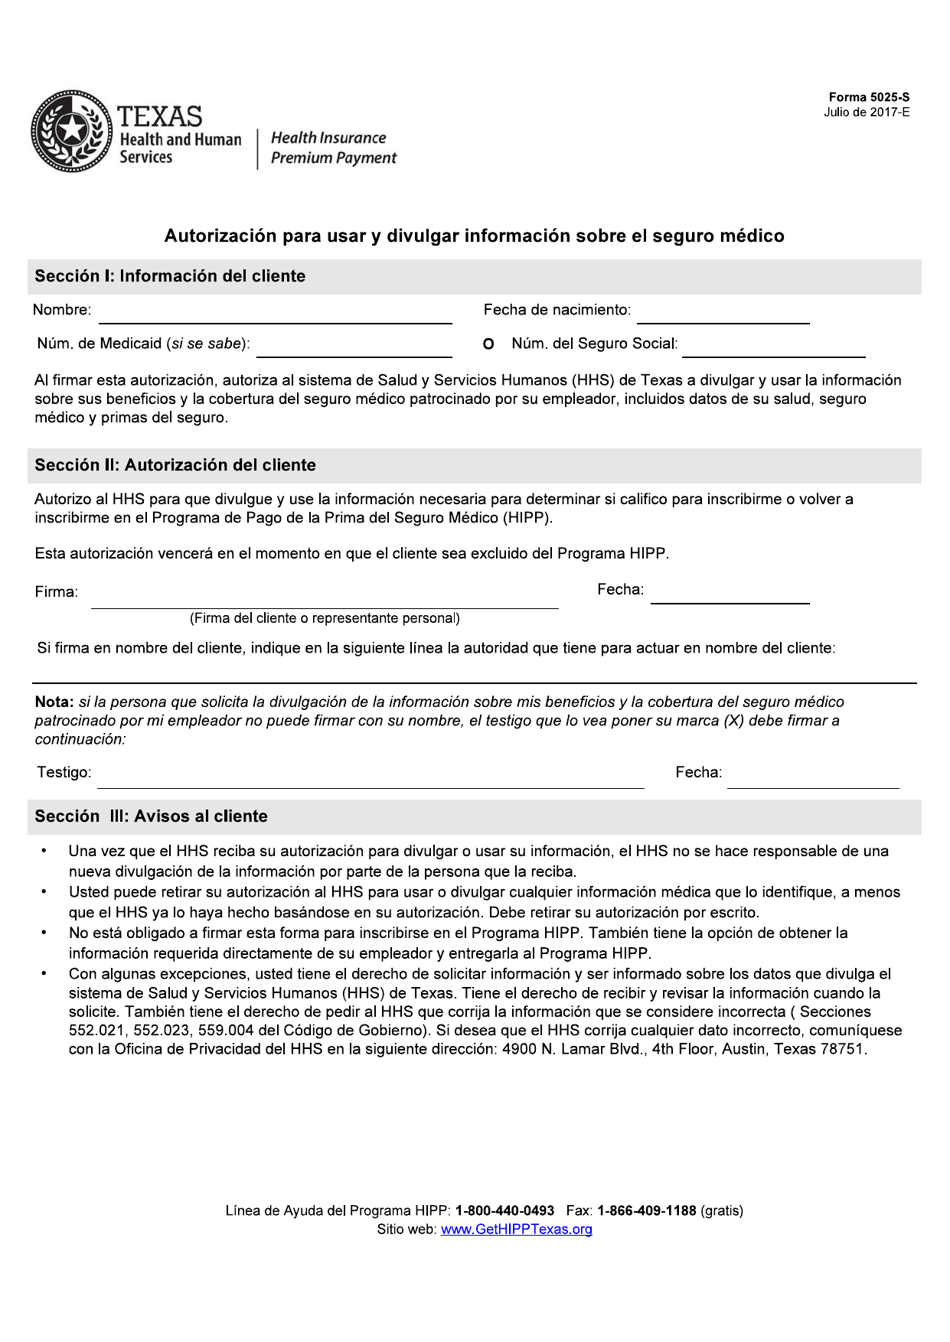 Formulario 5025-S Autorizacion Para USAR Y Divulgar Informacion Sobre El Seguro Medico - Texas (Spanish), Page 1